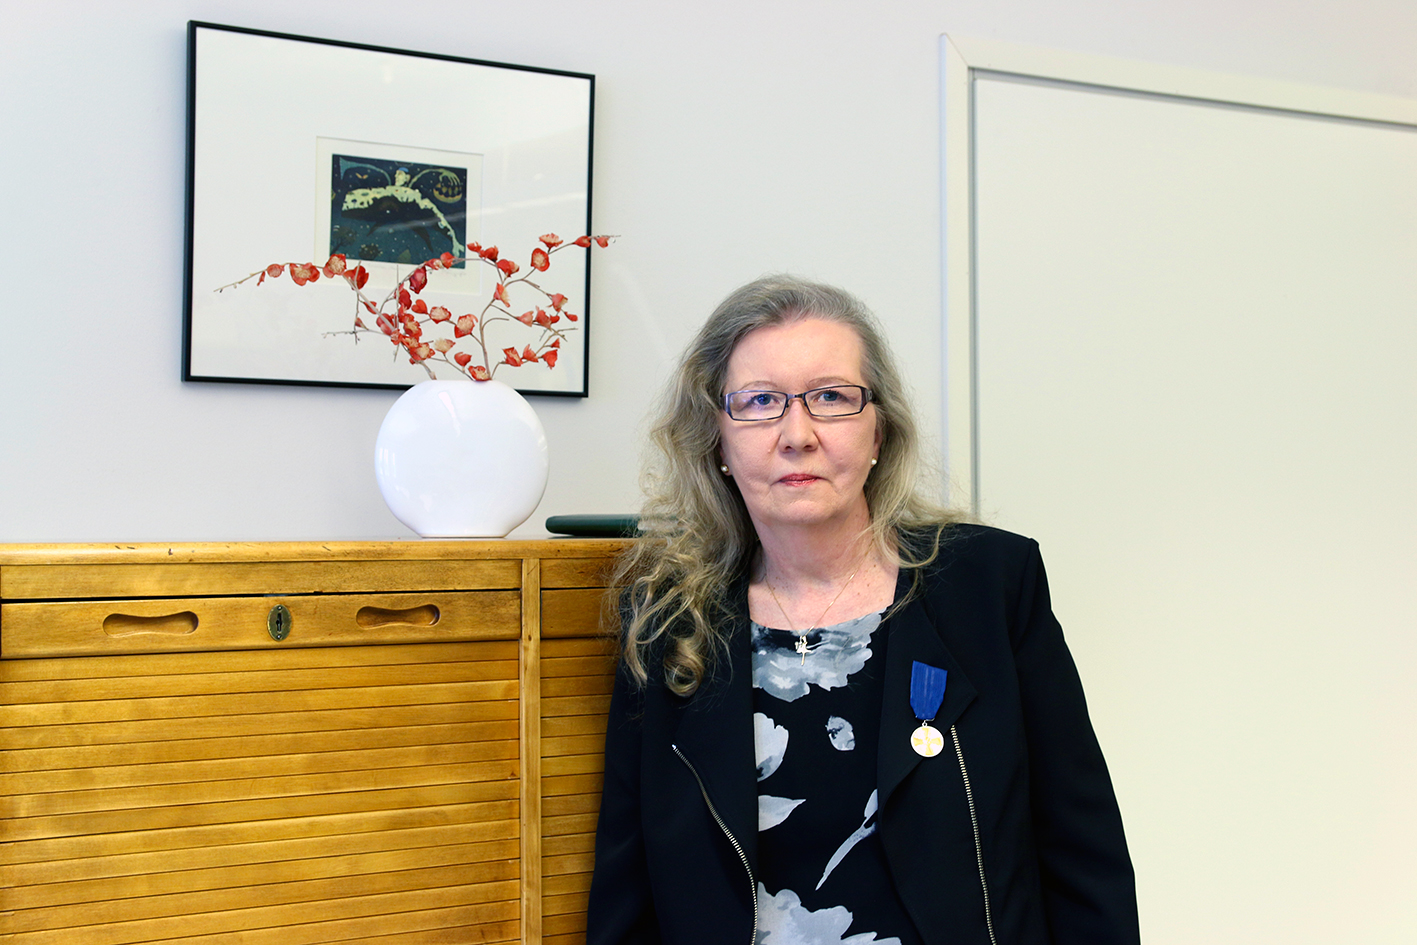 Valkeakosken ammattiopisto, VAAO. Kuvassa Eija Hirvimäki katsoo kameraan. Hänellä on vaaleat hiukset, tummat vaatteet ja silmälasit.